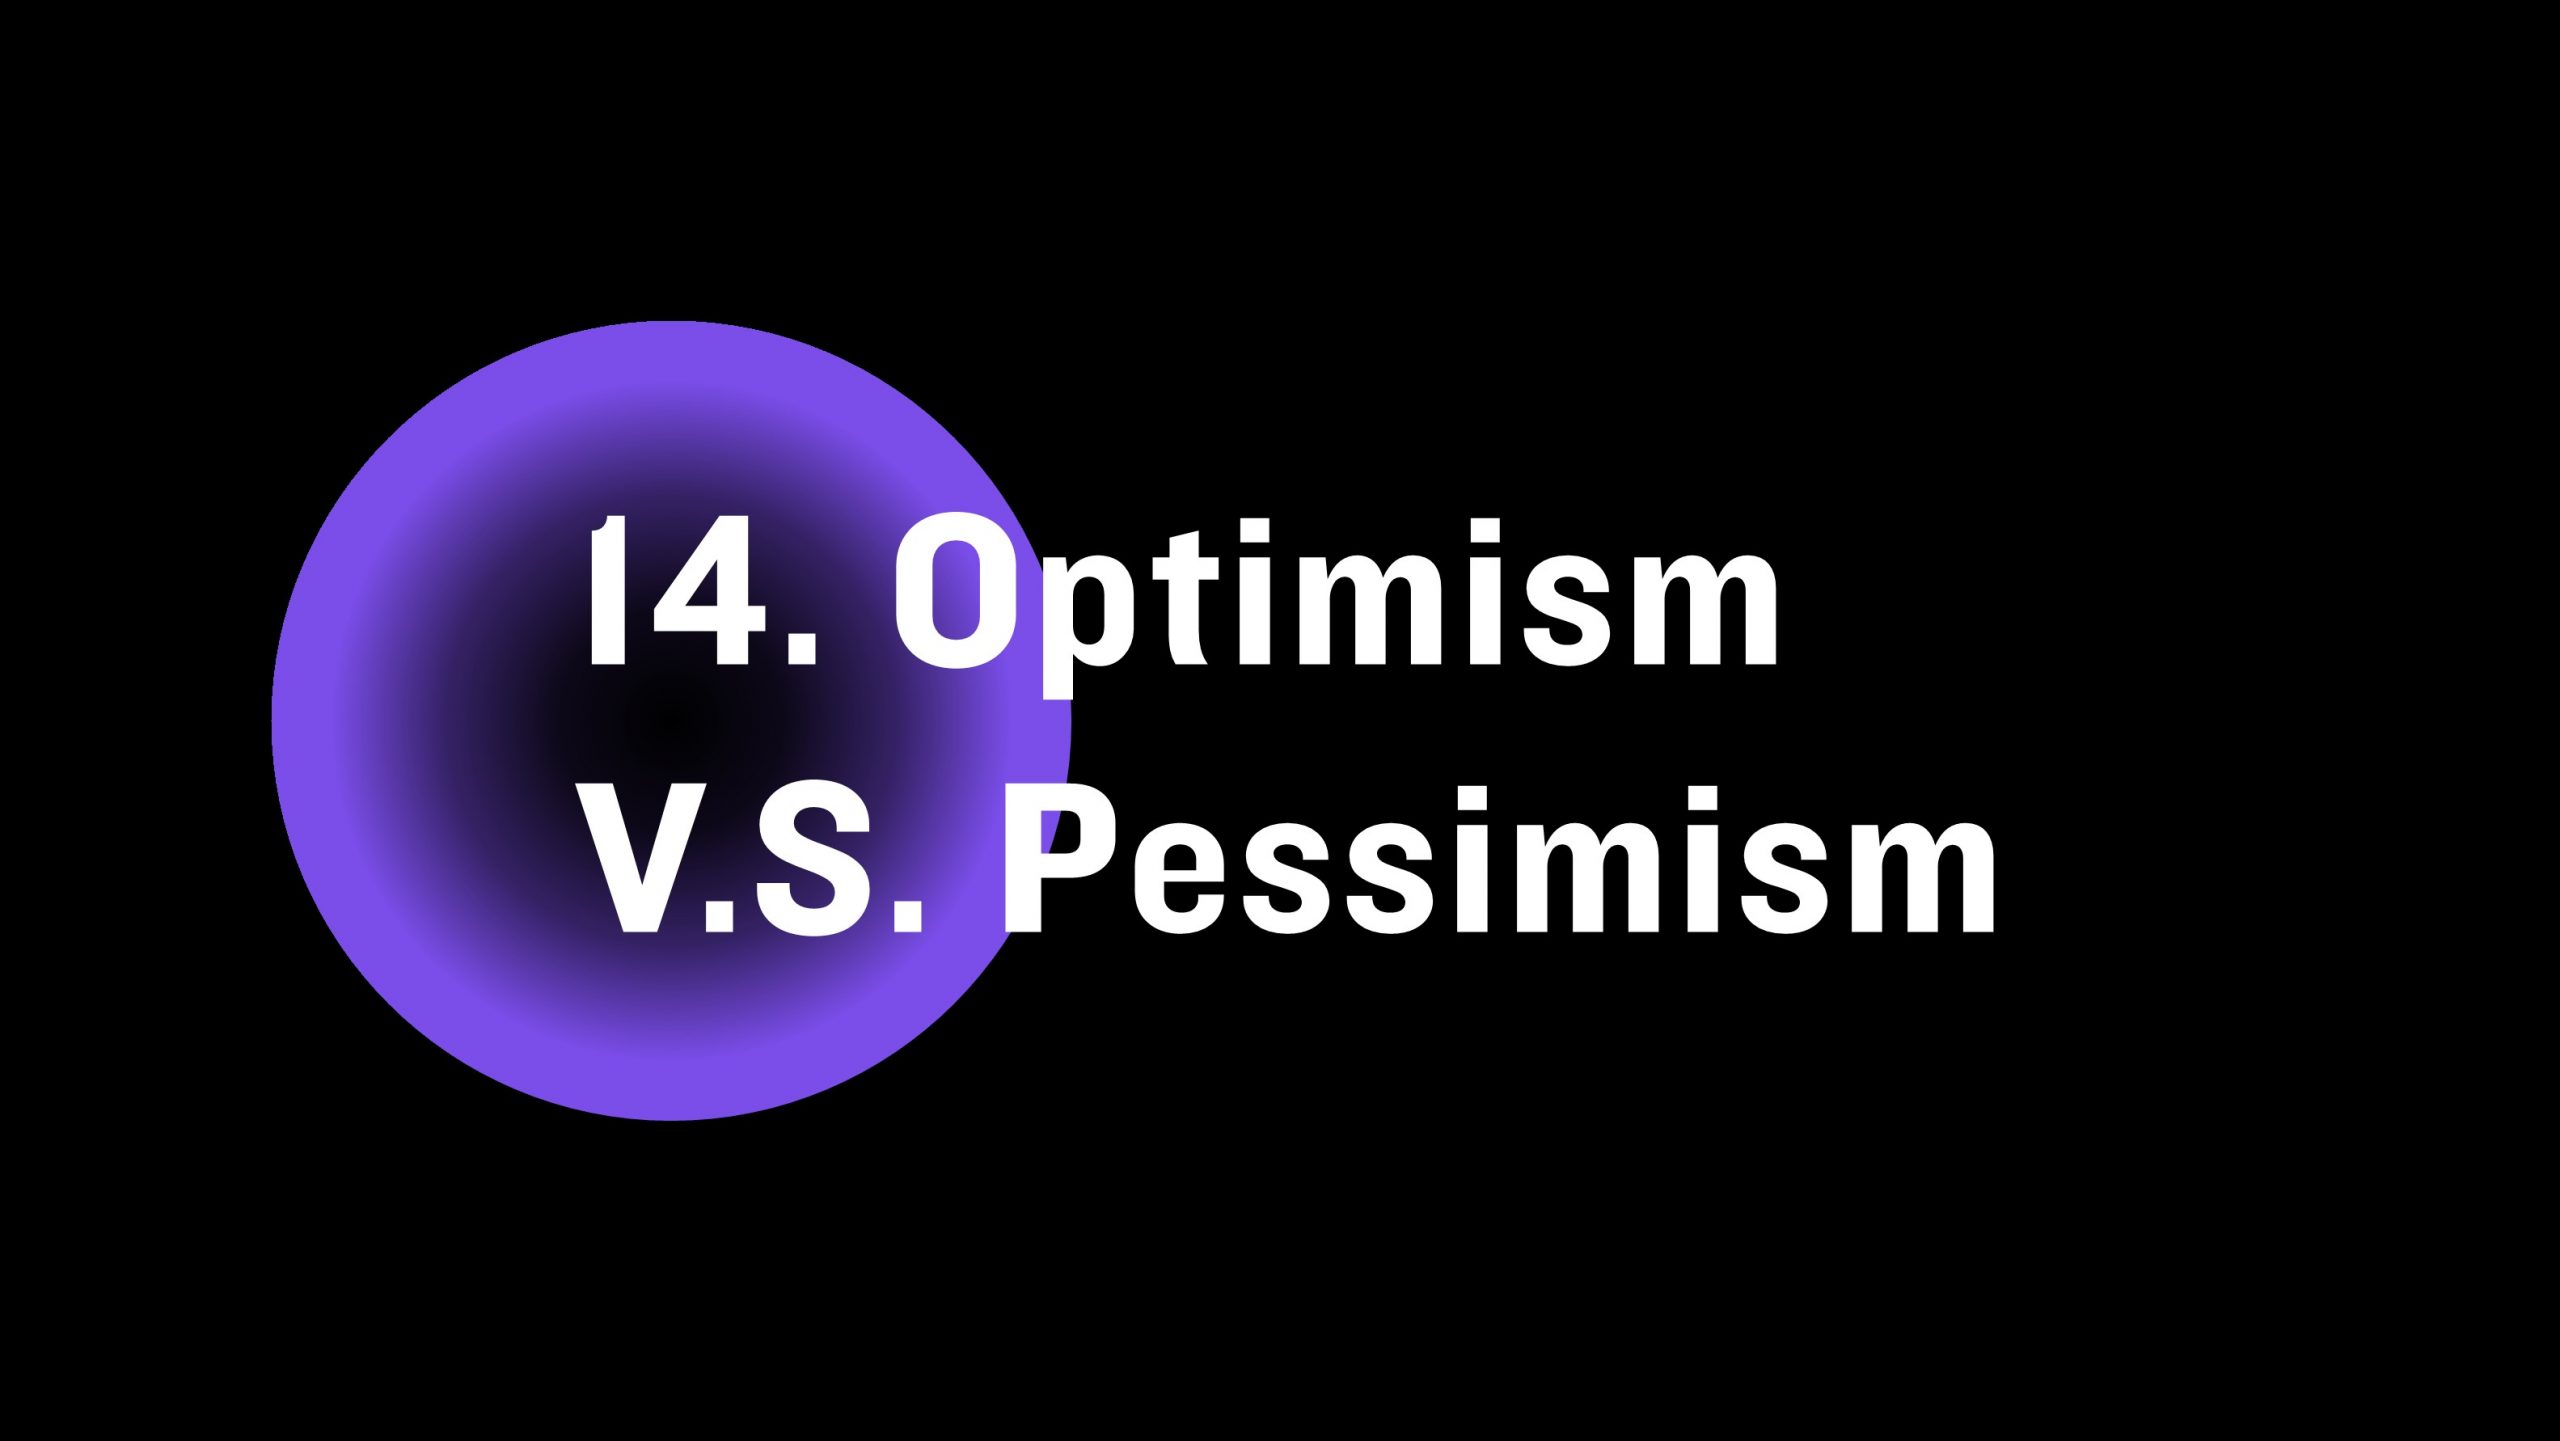 Optimism vs. pessimism